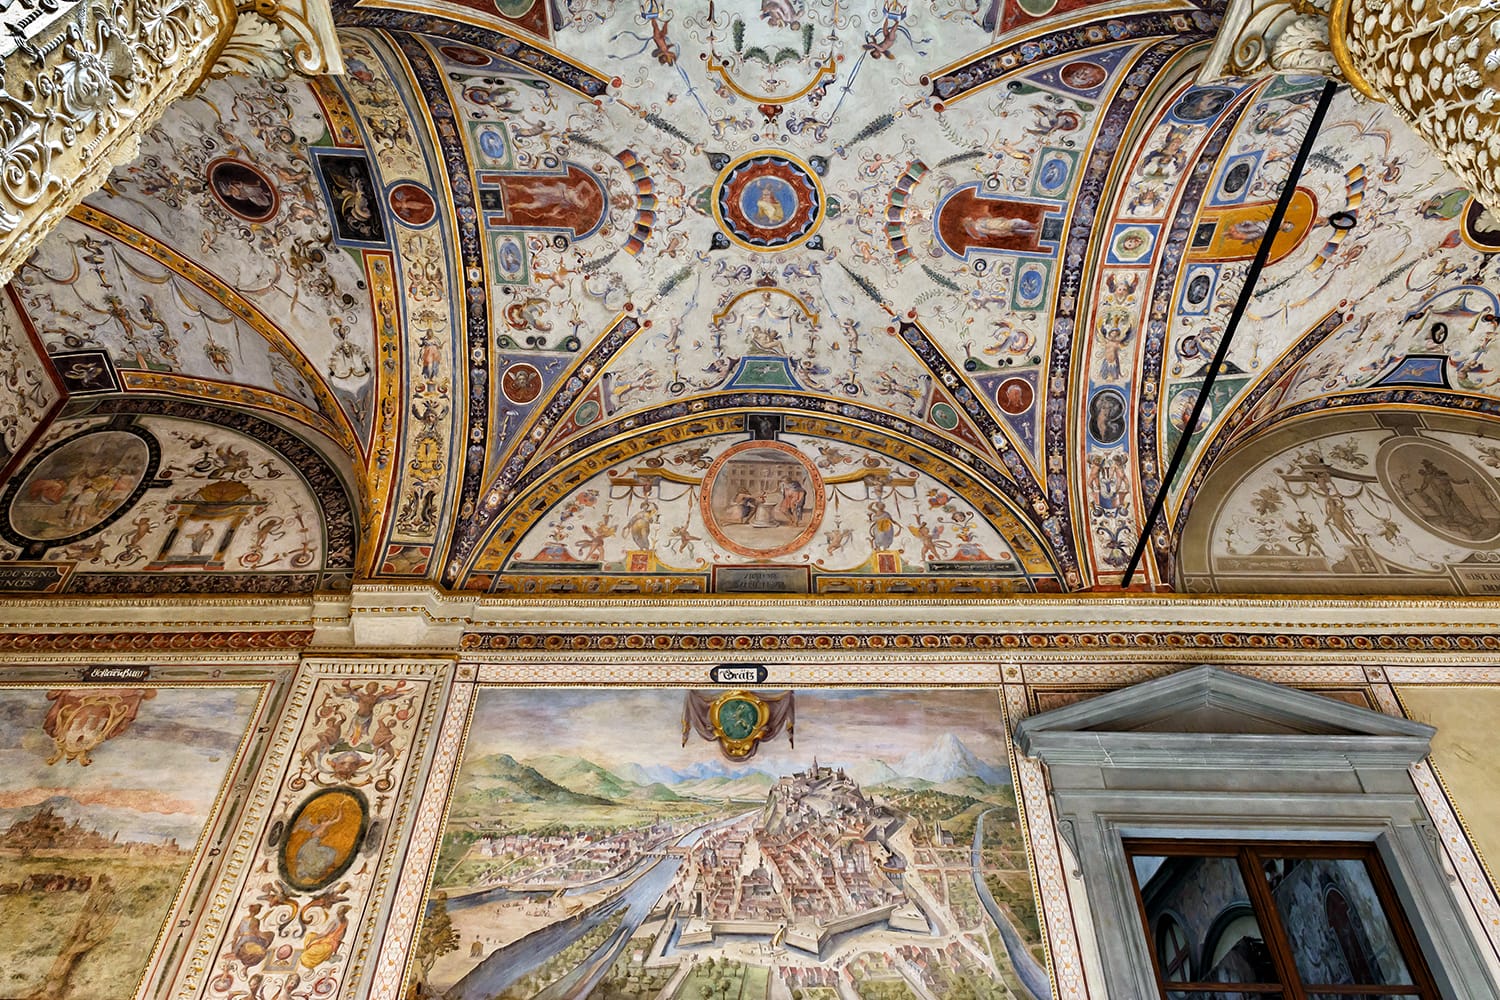 Περίτεχνη αυλή του Palazzo Vecchio. Όμορφες τοιχογραφίες της Αναγέννησης ακόμα και στο ταβάνι. Το Palazzo Vecchio είναι ένα από τα κύρια ορόσημα της Φλωρεντίας ή της Φλωρεντίας.